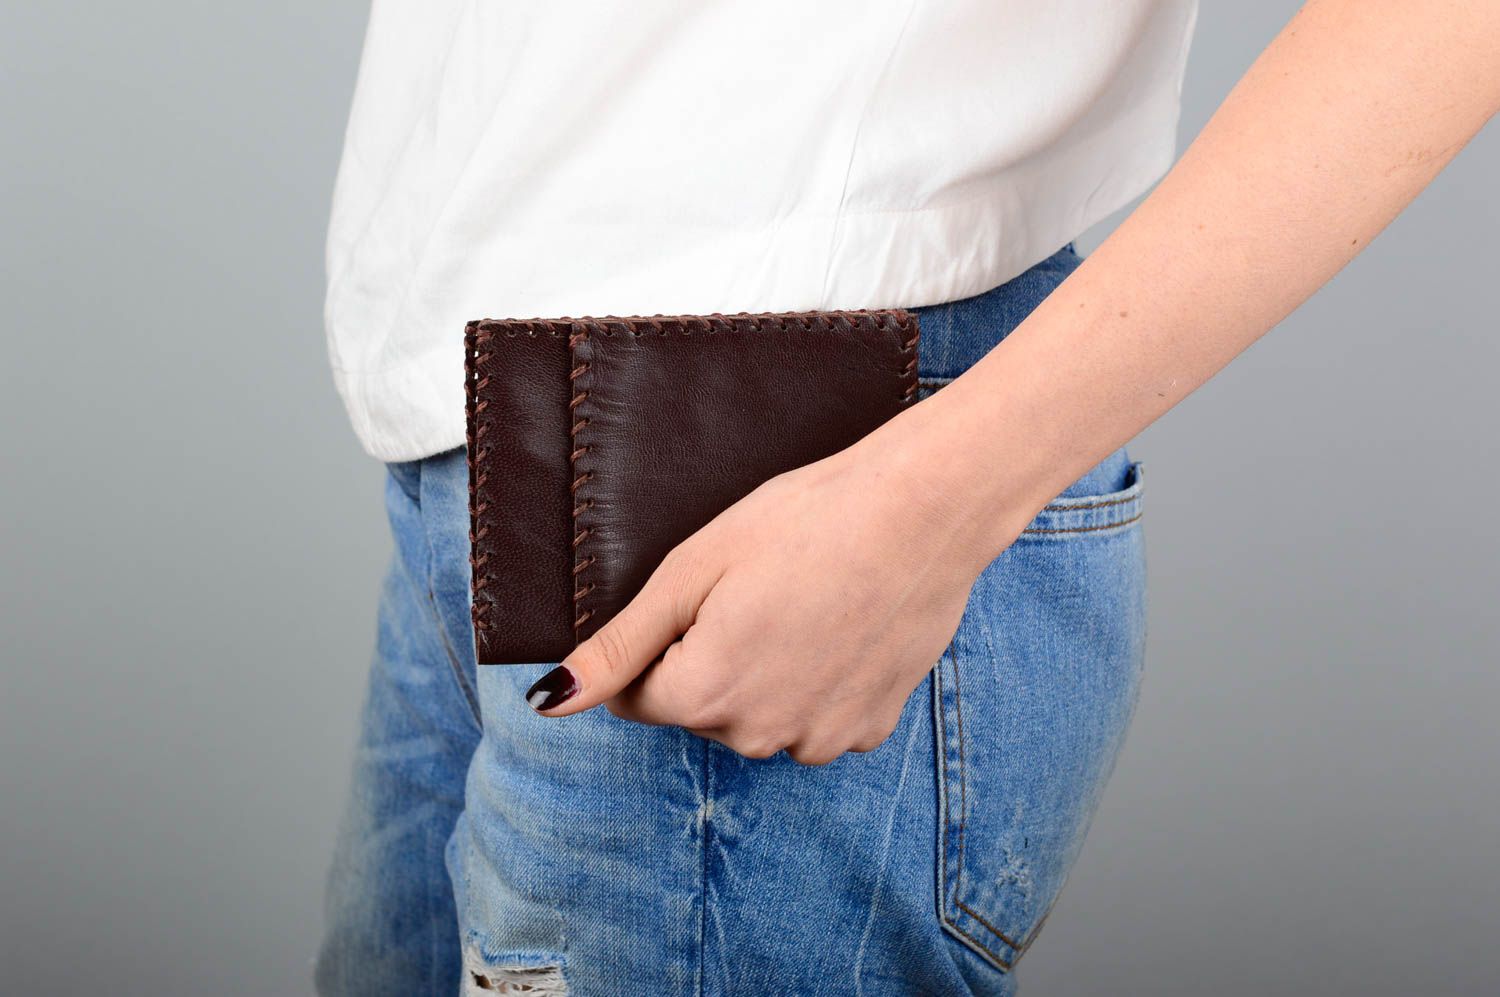 Кожаный кошелек портмоне прямоугольный коричневый красивый стильный хэнд мейд фото 5